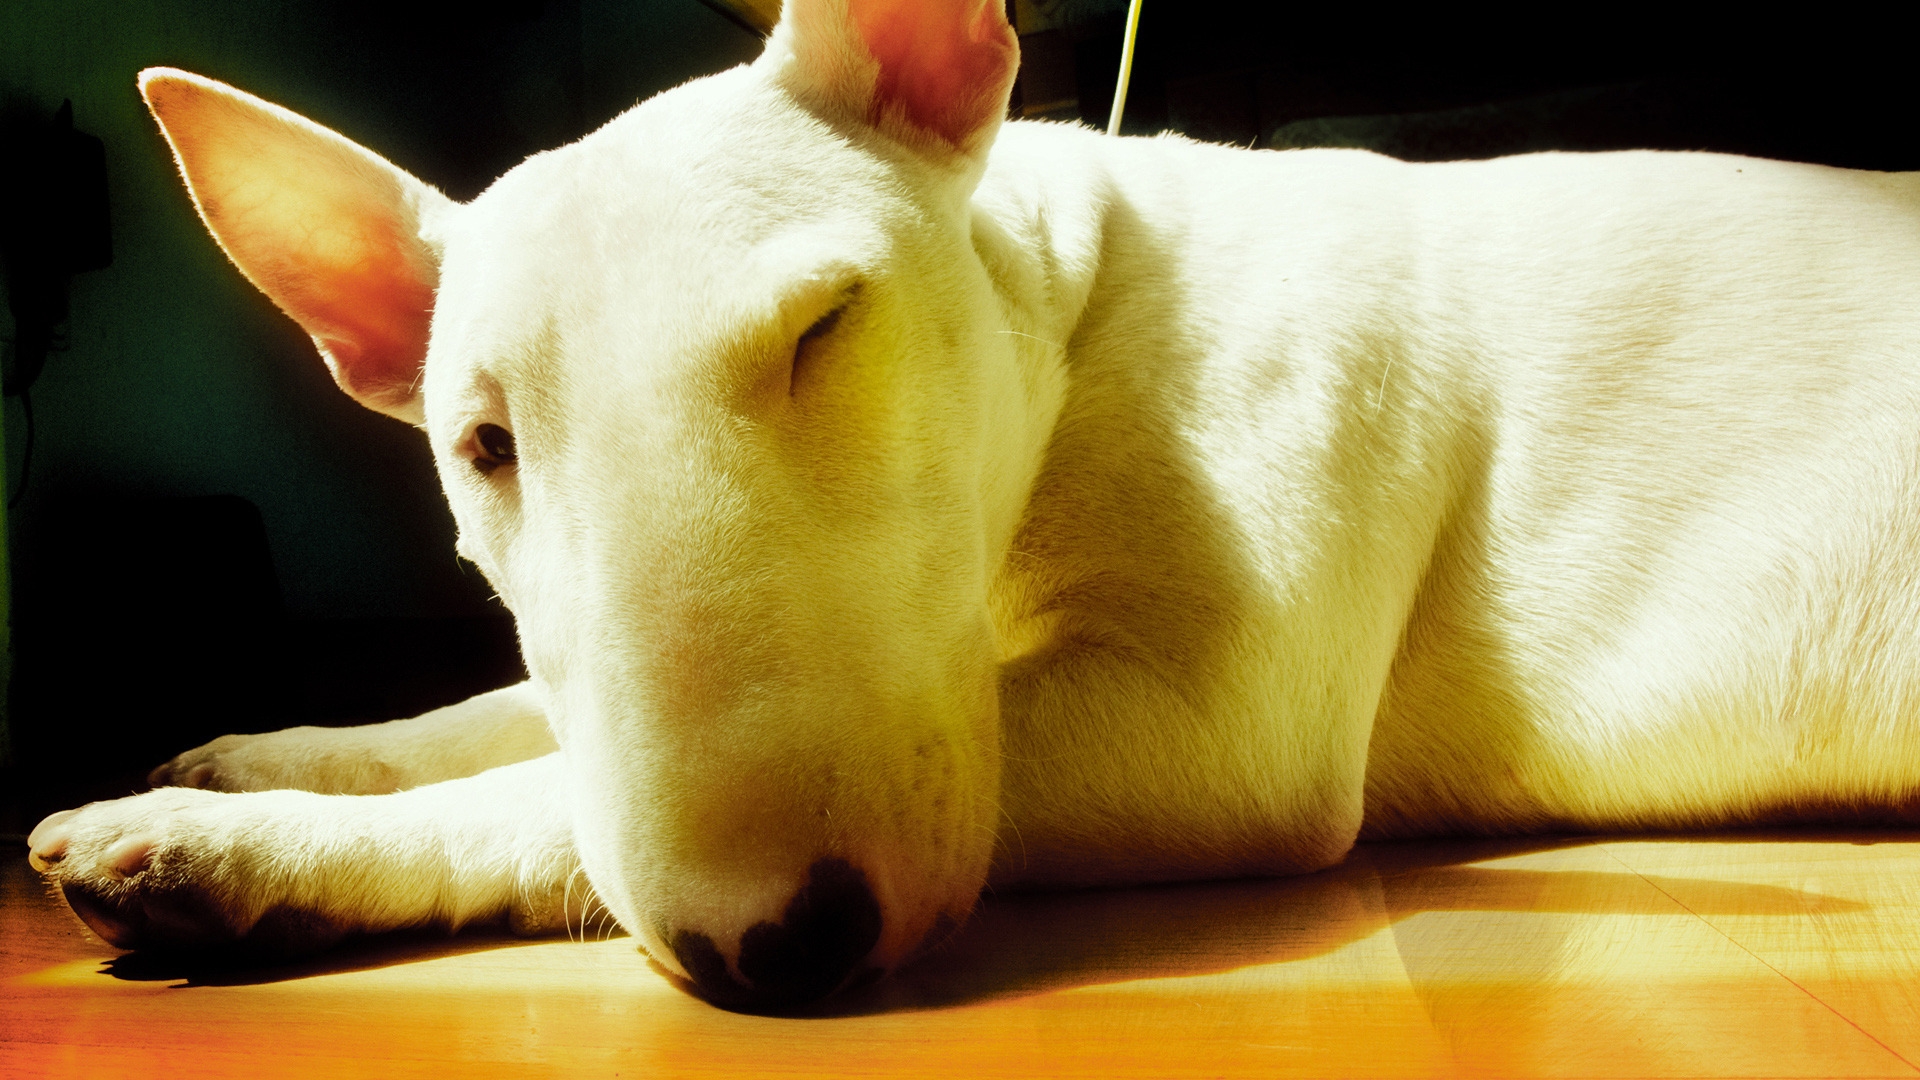 Cute Bull Terrier for 1920 x 1080 HDTV 1080p resolution